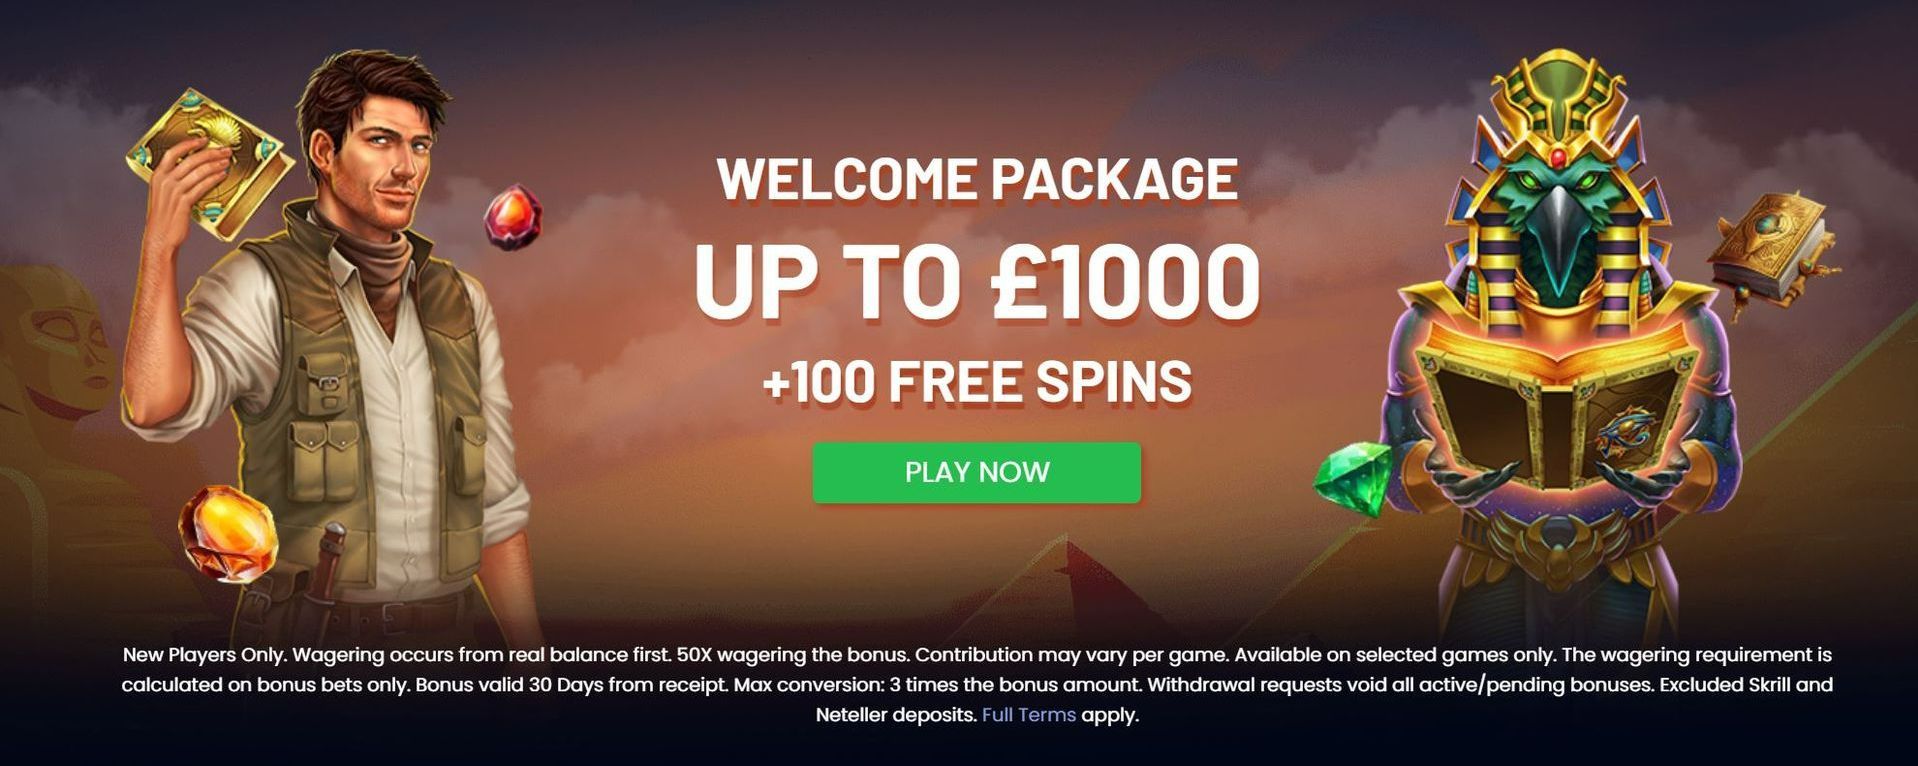 slot site casino Offer from Go Gambling